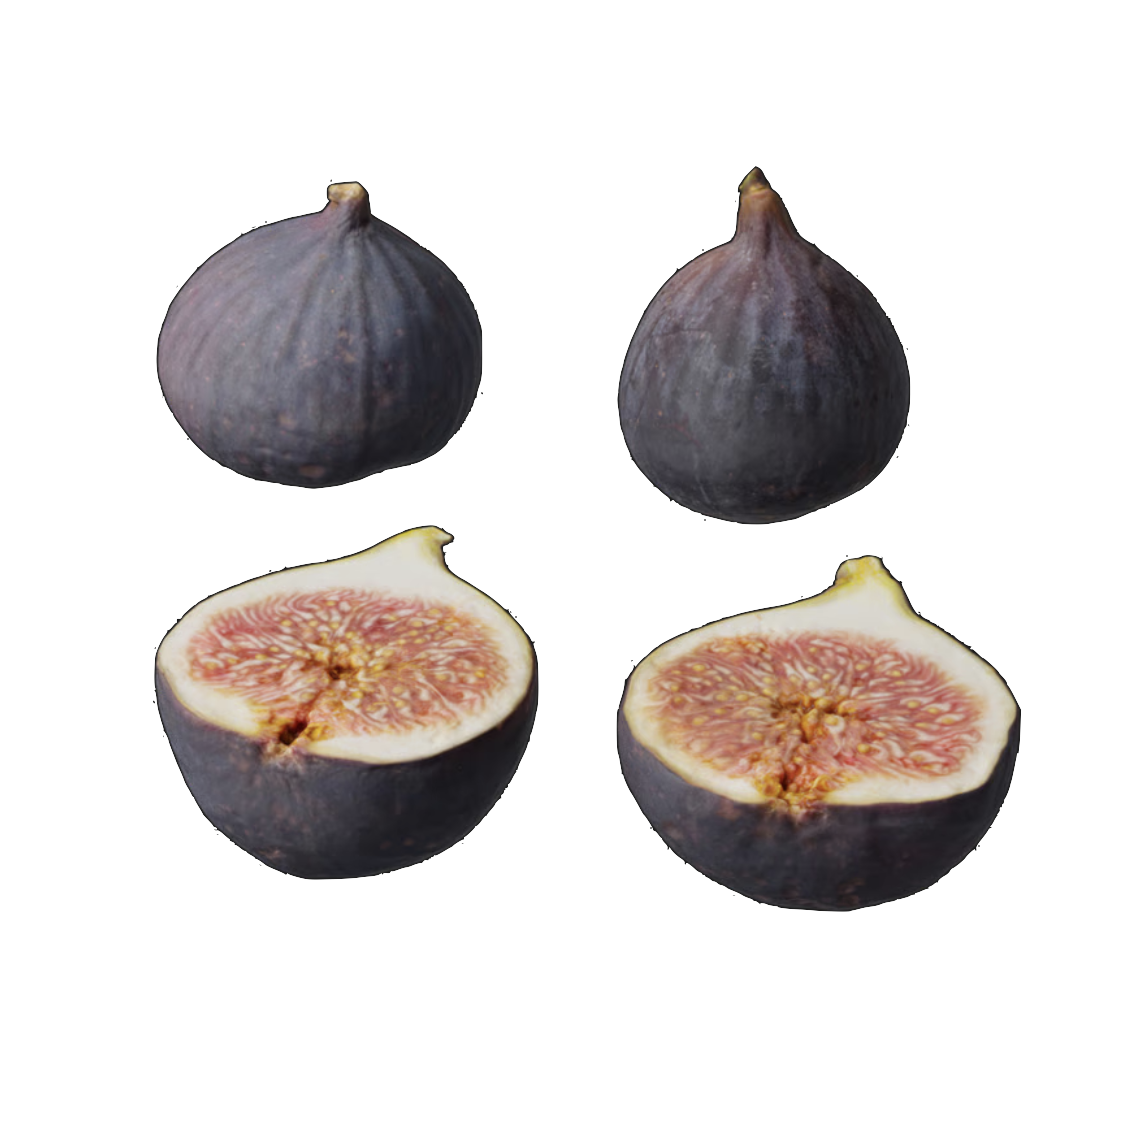 Fruit Figs 001